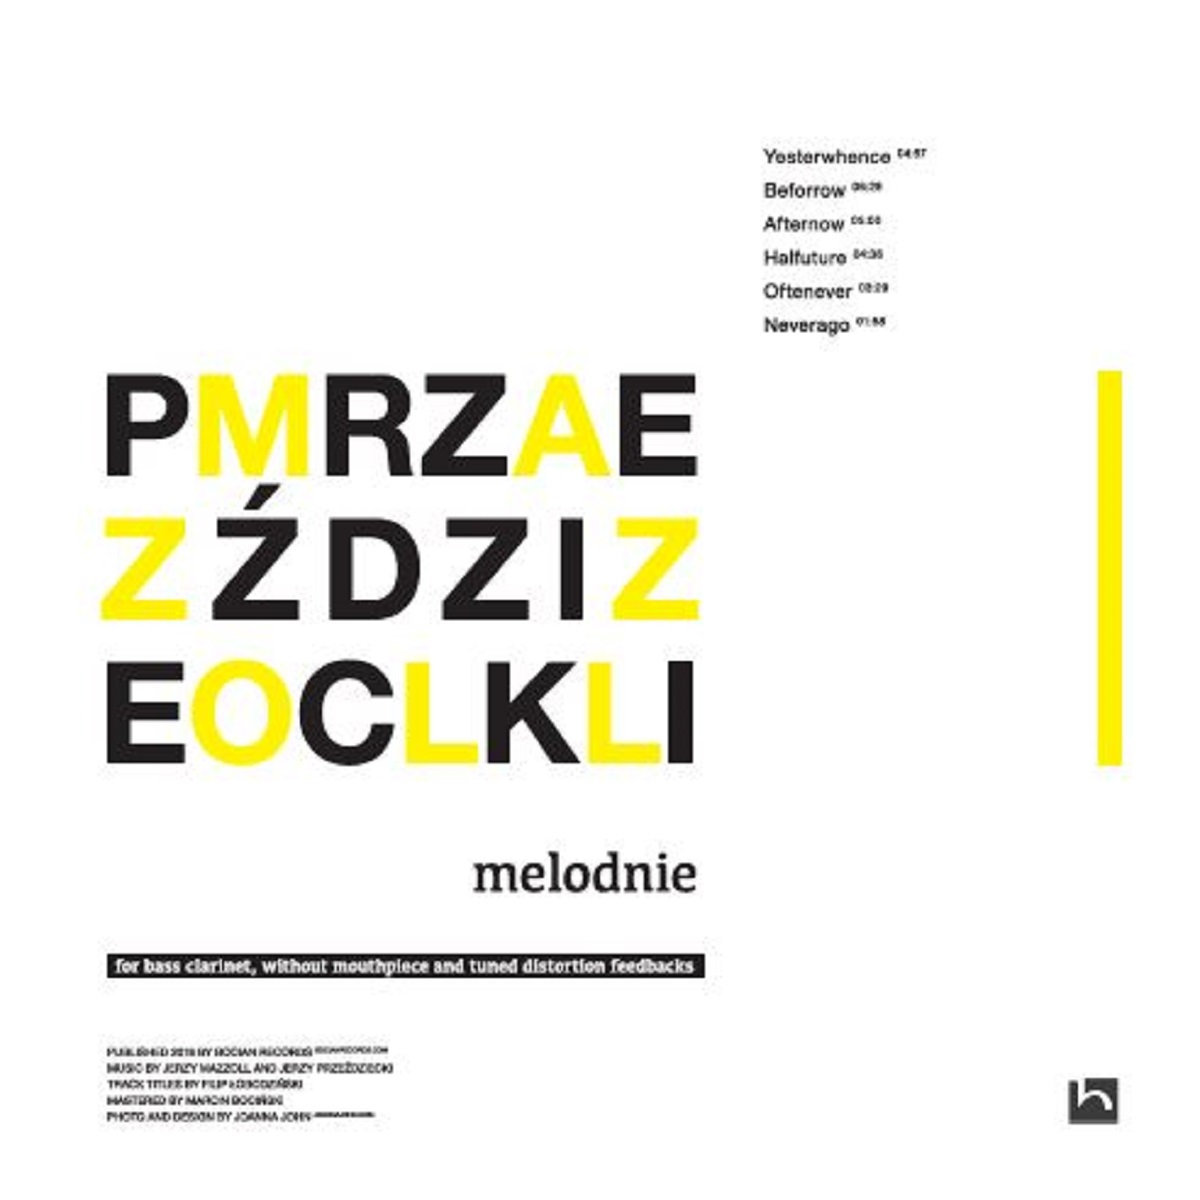 JERZY MAZZOLL - Jerzy Mazzoll and Jerzy Prze&amp;#378;dziecki : melodnie cover 